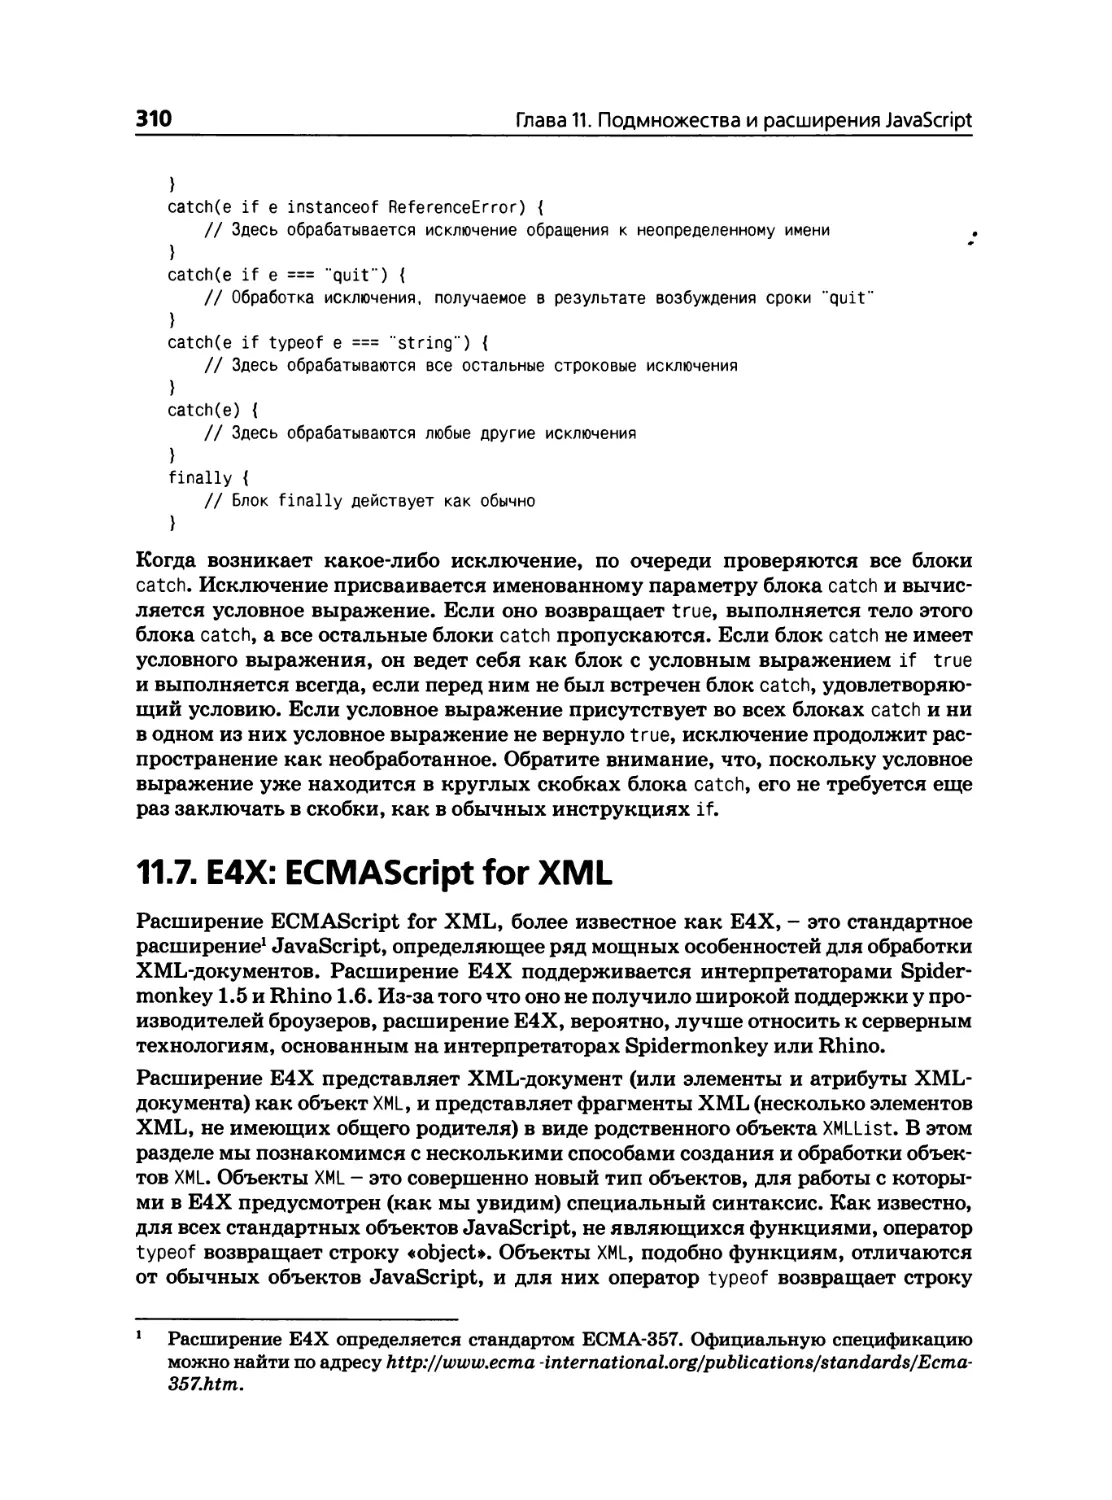 11.7. Е4Х: ECMAScript for XML